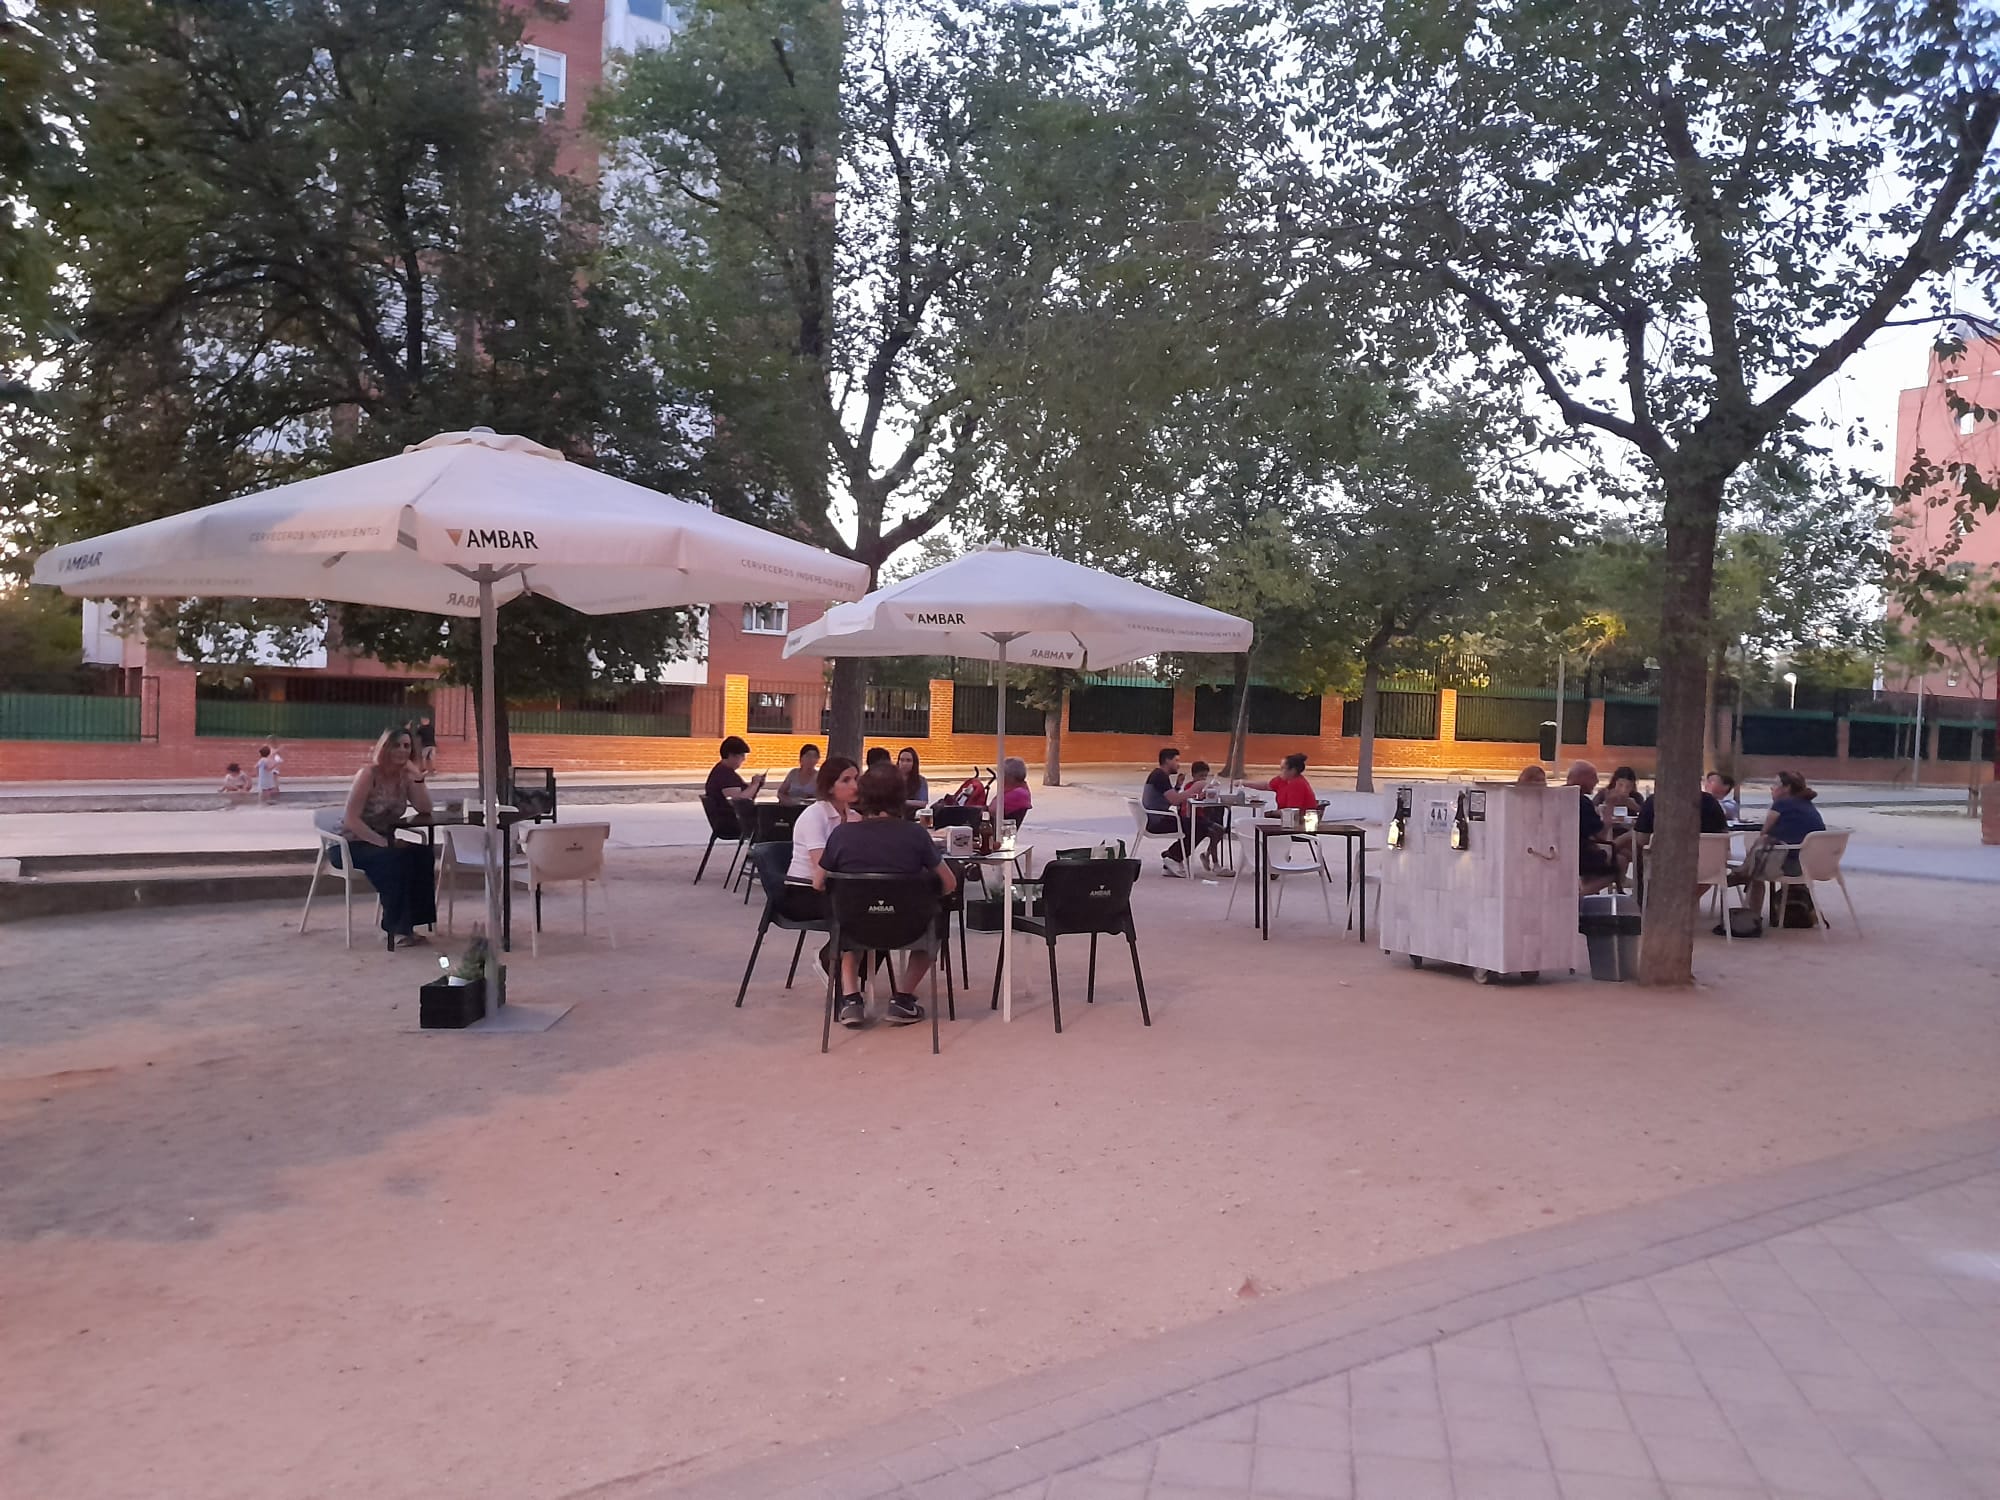 Bar Cafetería con terraza en Colonia Jardín-Campamento (Madrid)